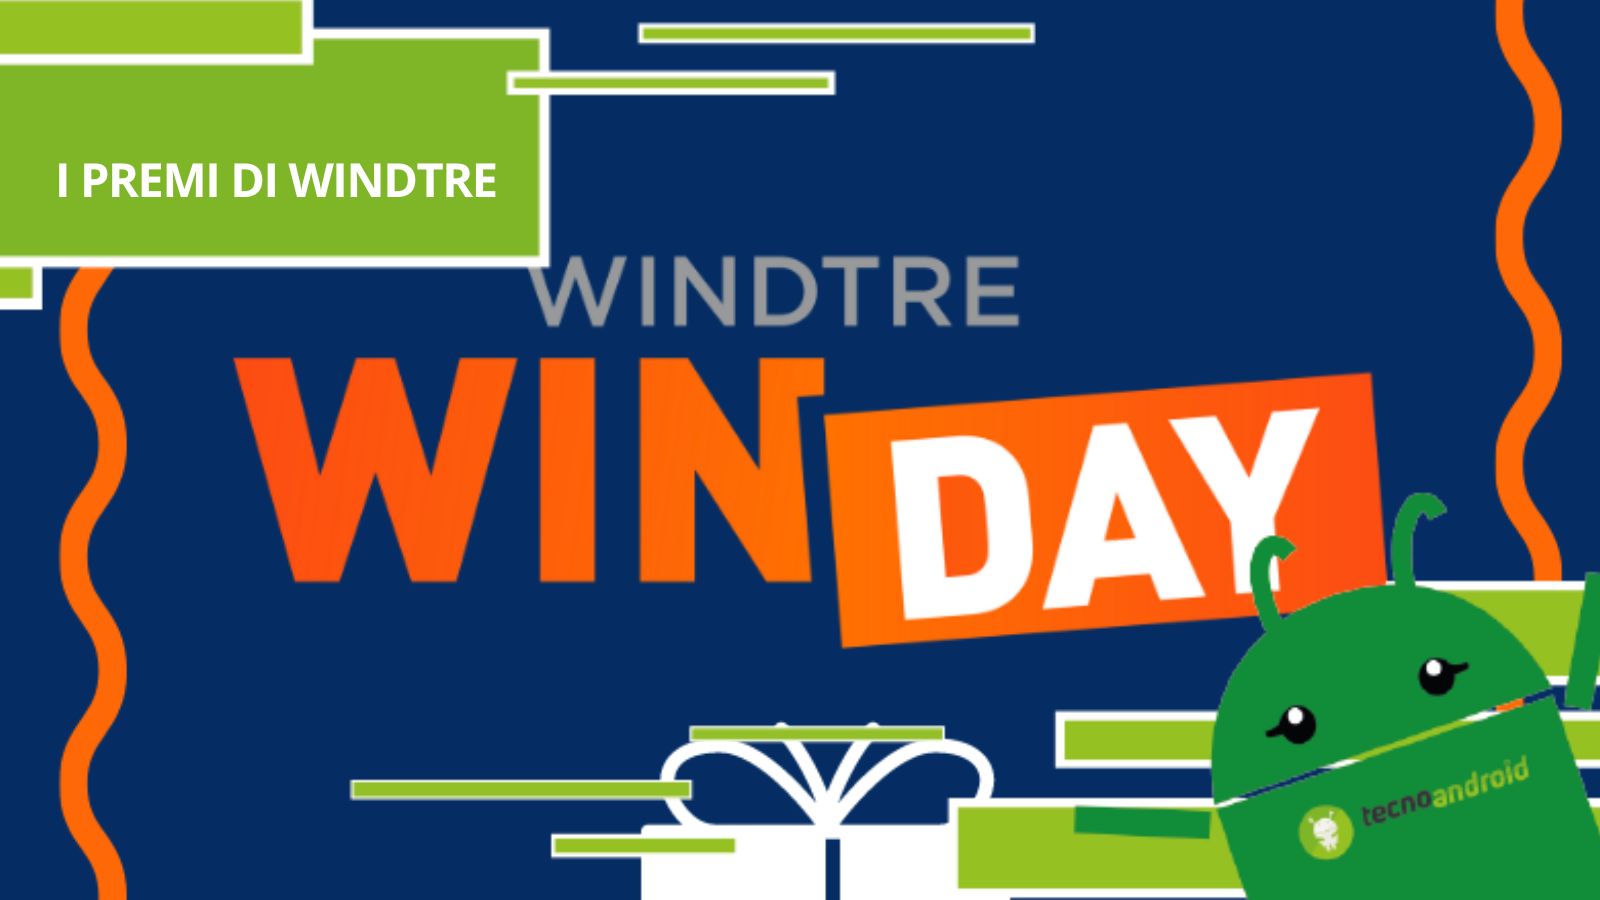 WindTre - stavolta l'operatore con WinDay+ si è superato, ecco i premi in palio